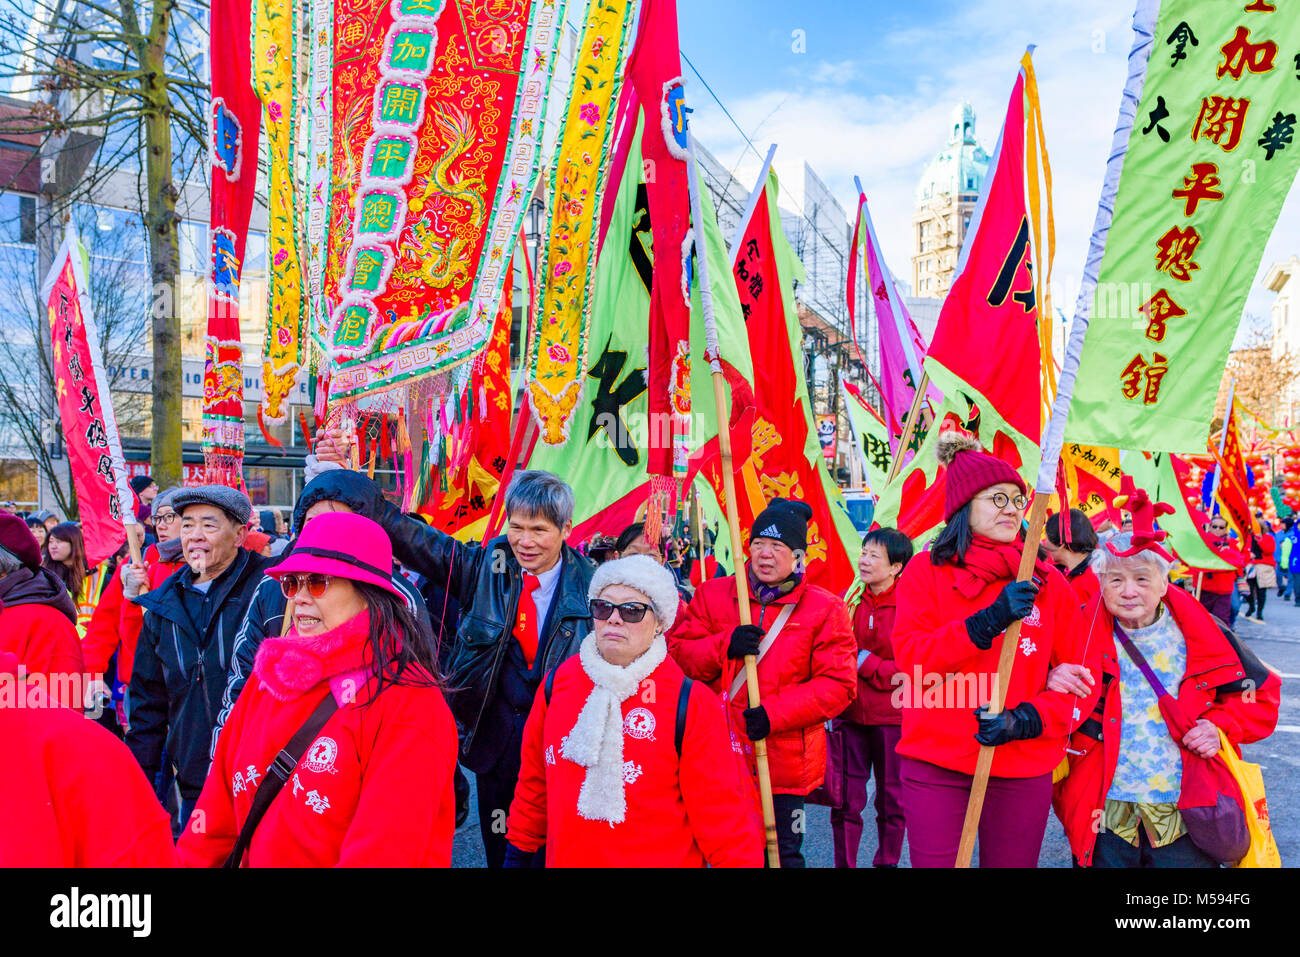 Hoy Ping wohltätige Verbindung März mit Fahnen auf chinesische Mondjahr Parade, Chinatown, Vancouver, British Columbia, Kanada. Stockfoto